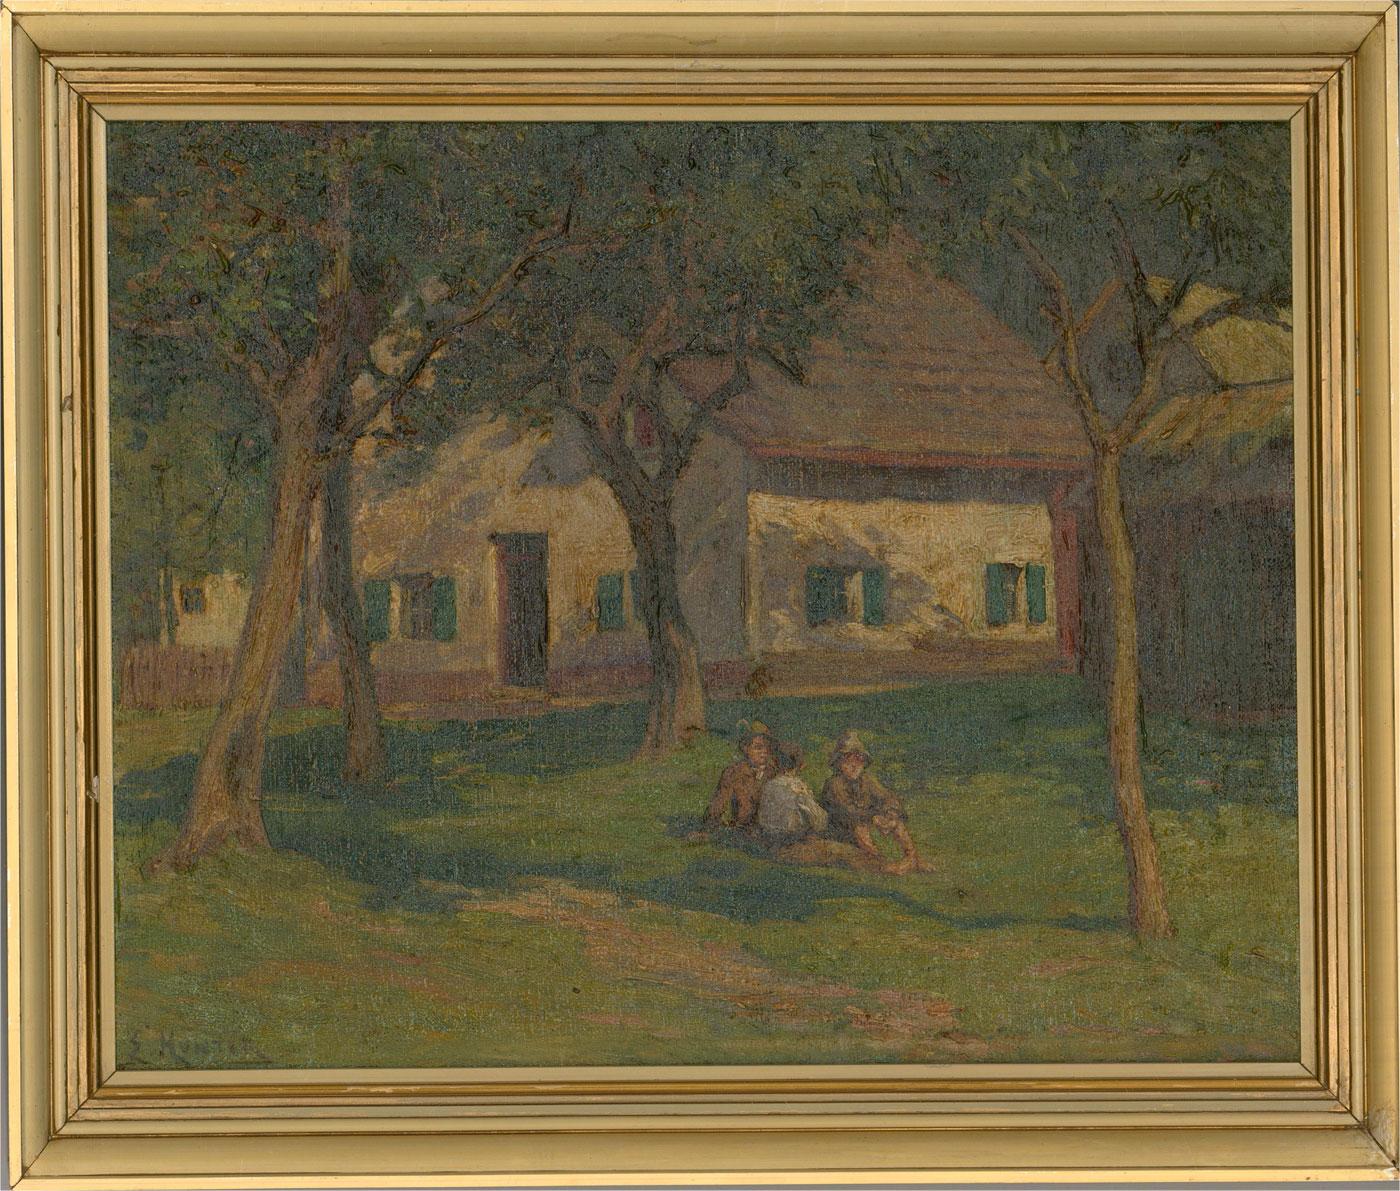 Une peinture à l'huile audacieuse et engageante de l'artiste E. Hunter, représentant trois garçons assis ensemble à l'ombre d'un groupe d'arbres. L'artiste a capturé le charme délicieux de cette scène avec son style impressionniste à l'empâtement.